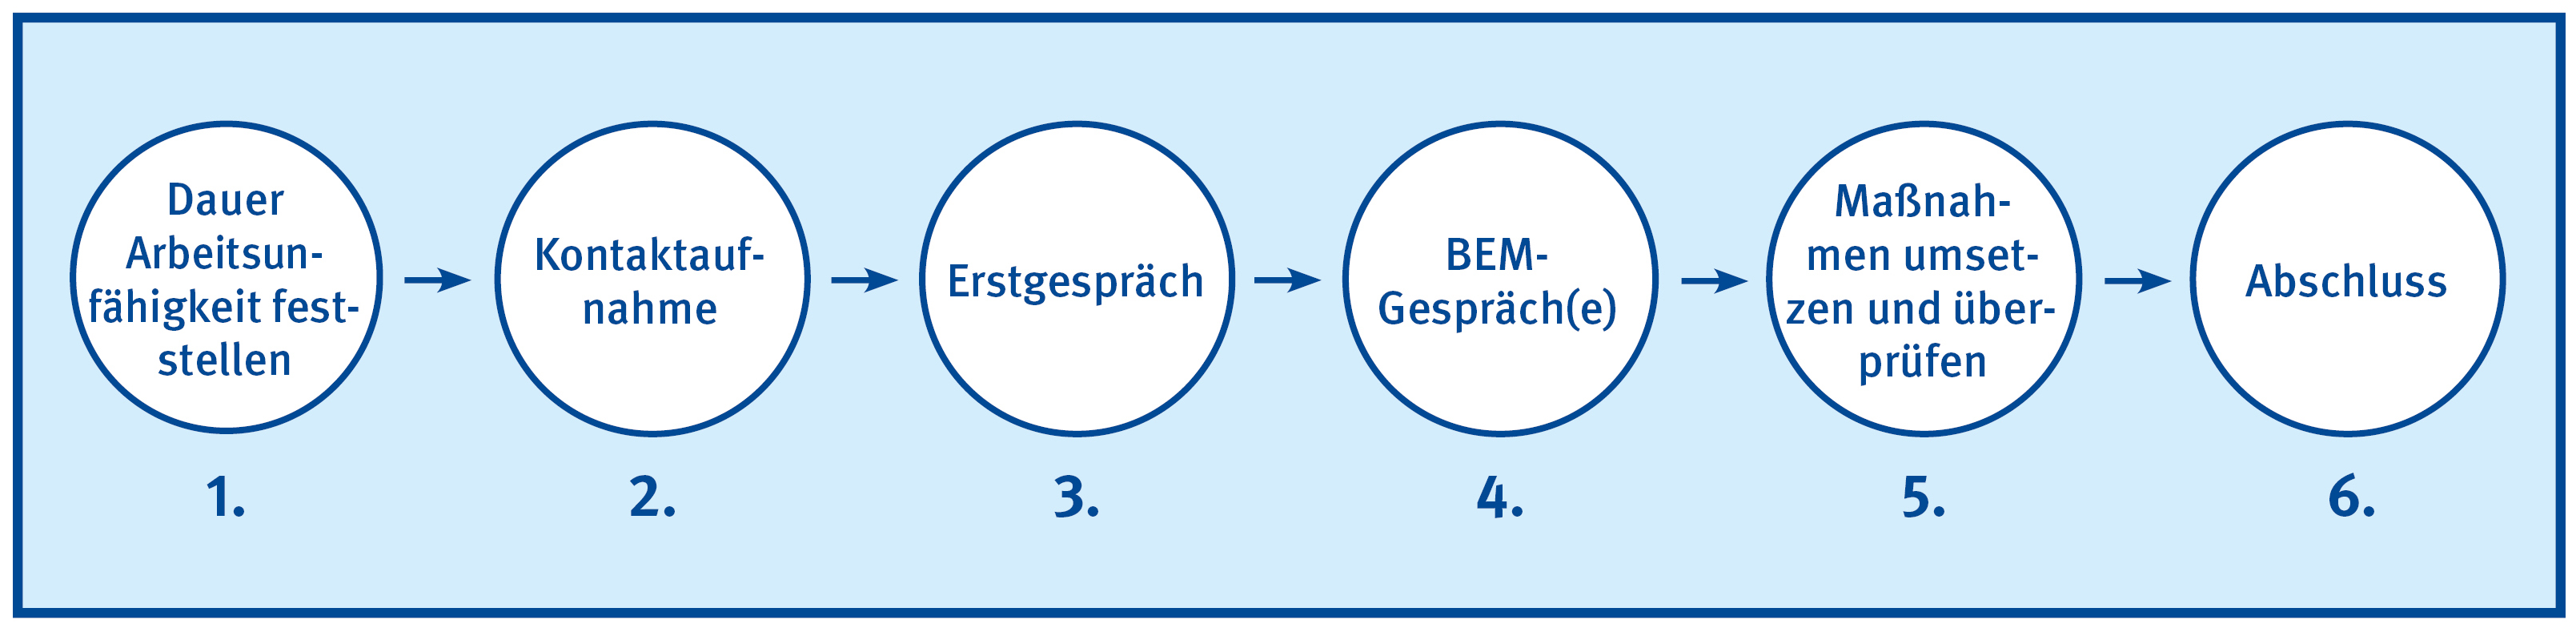 Grafik zeigt den Ablauf eines Betrieblichen Eingliederungsmanagements (BEM) in sechs Schritten.